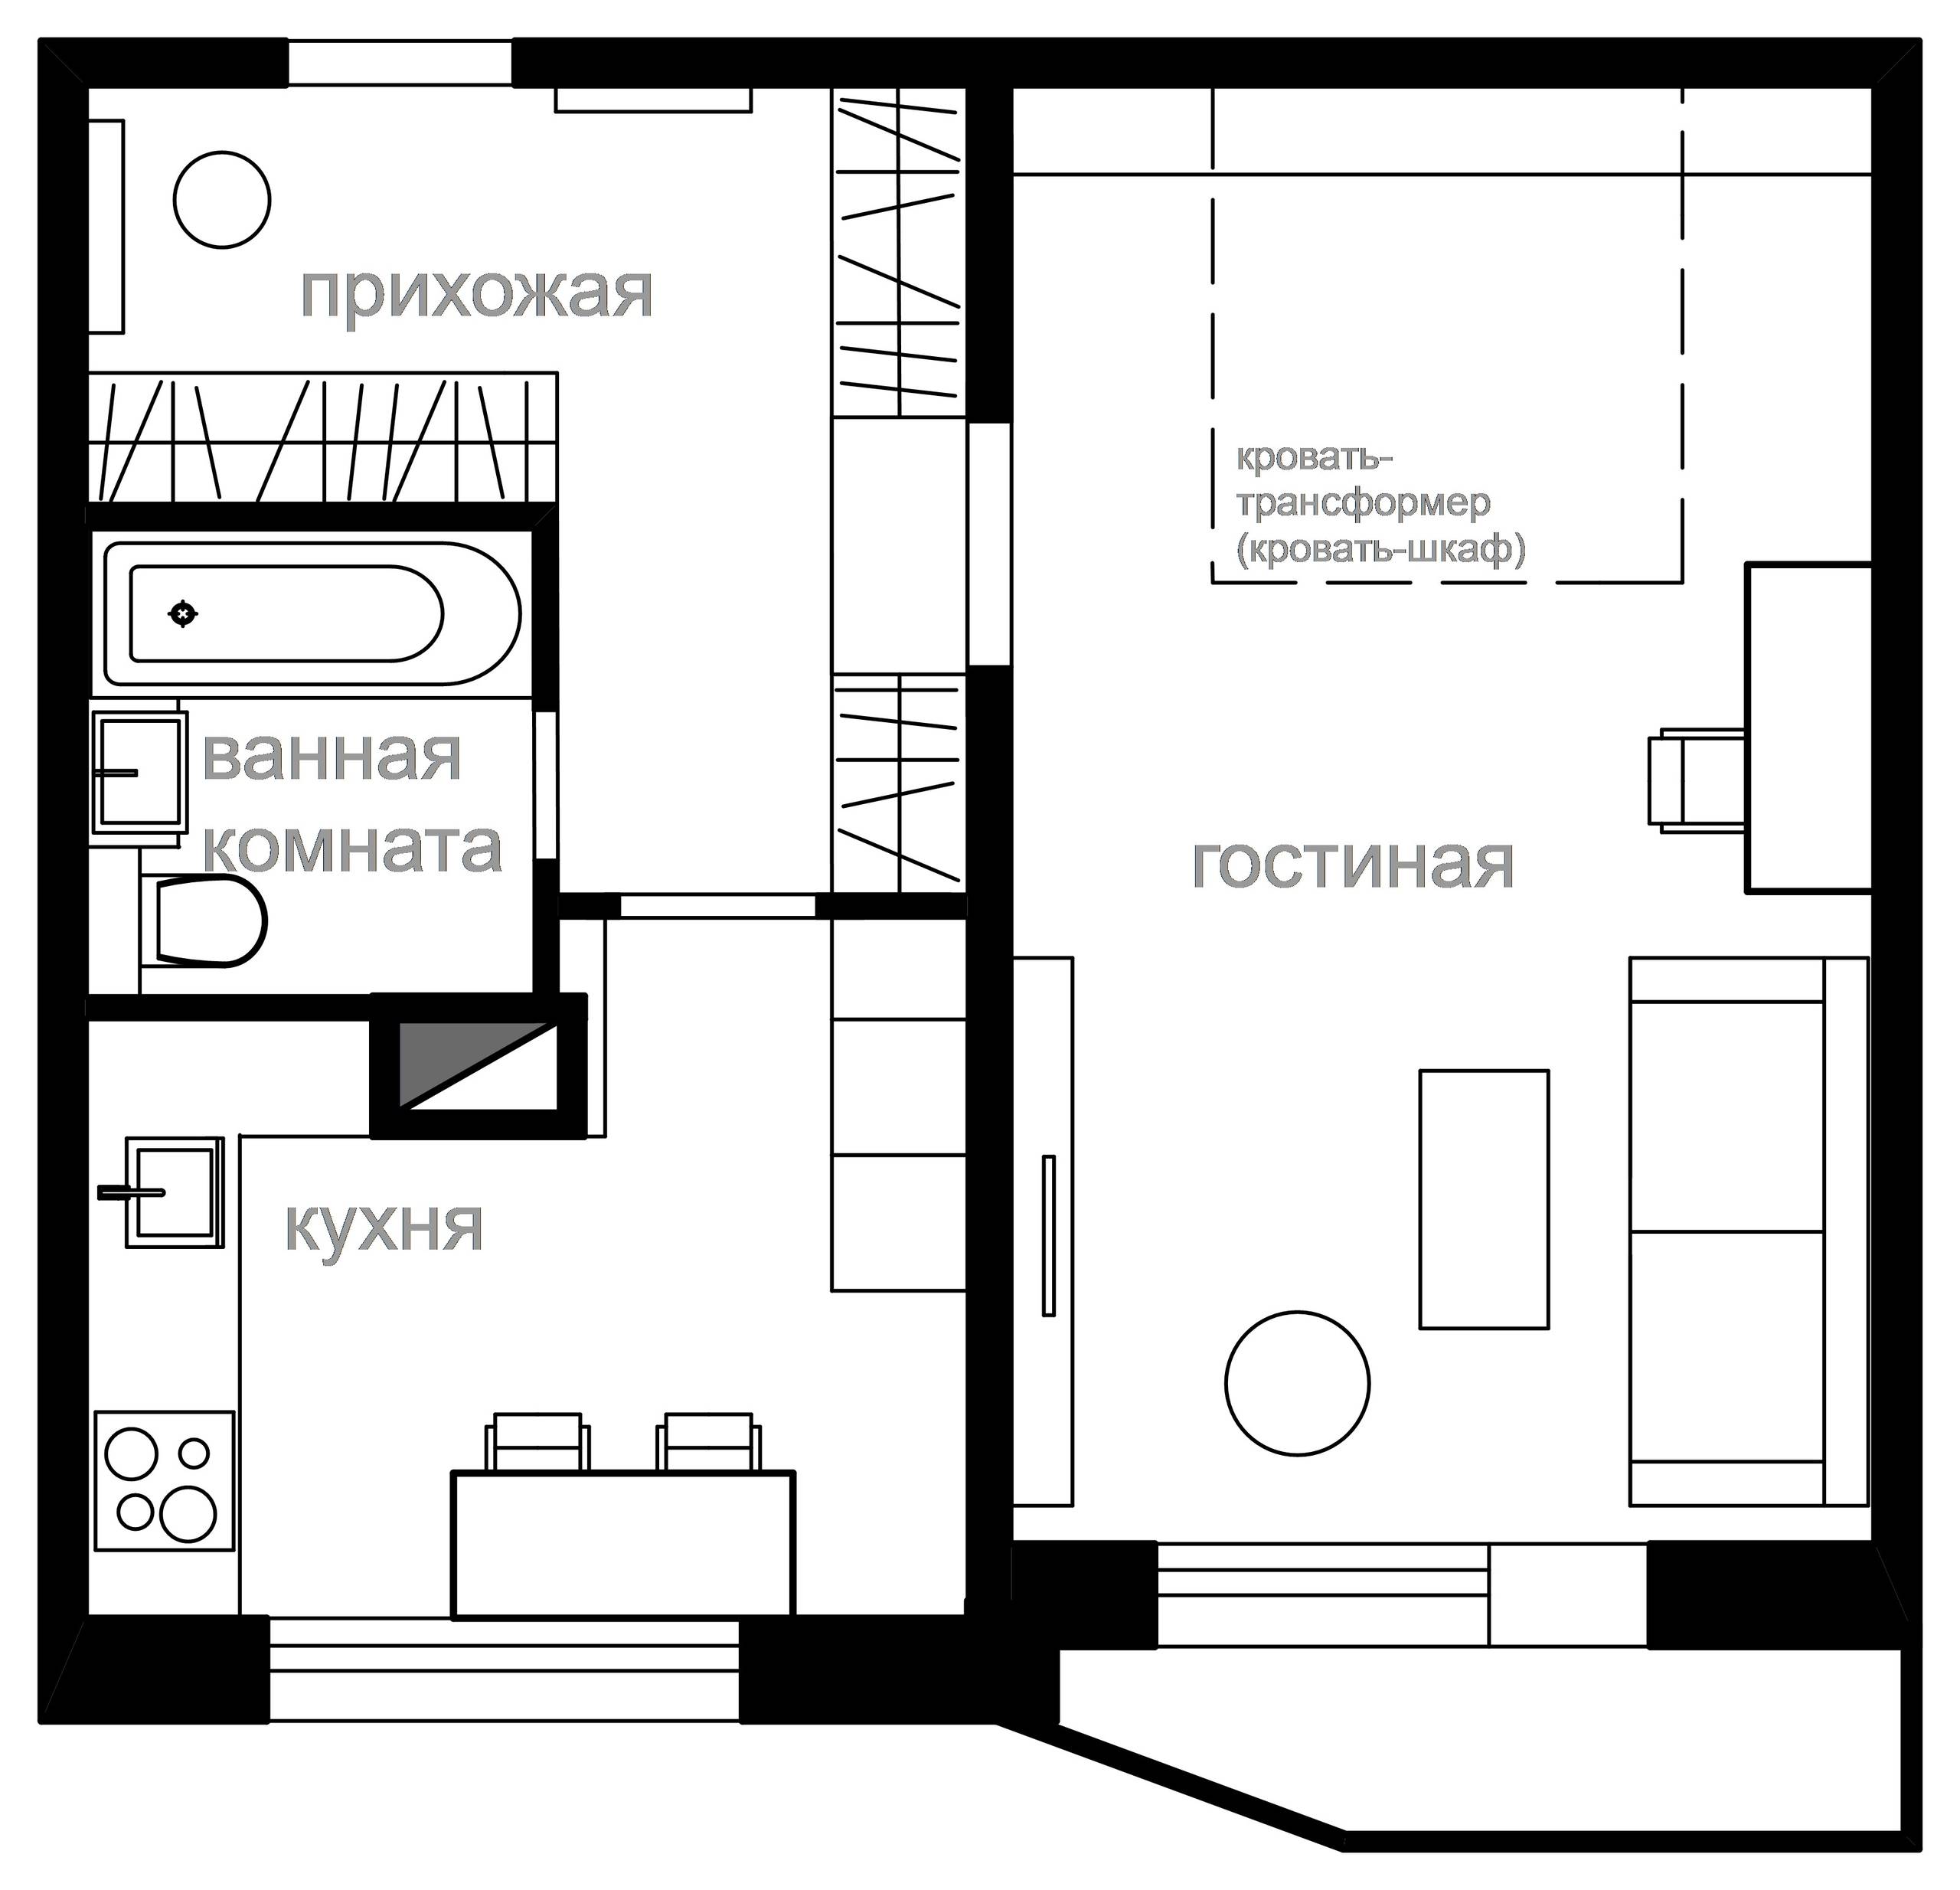 3 решения для однокомнатной квартиры серии П-44